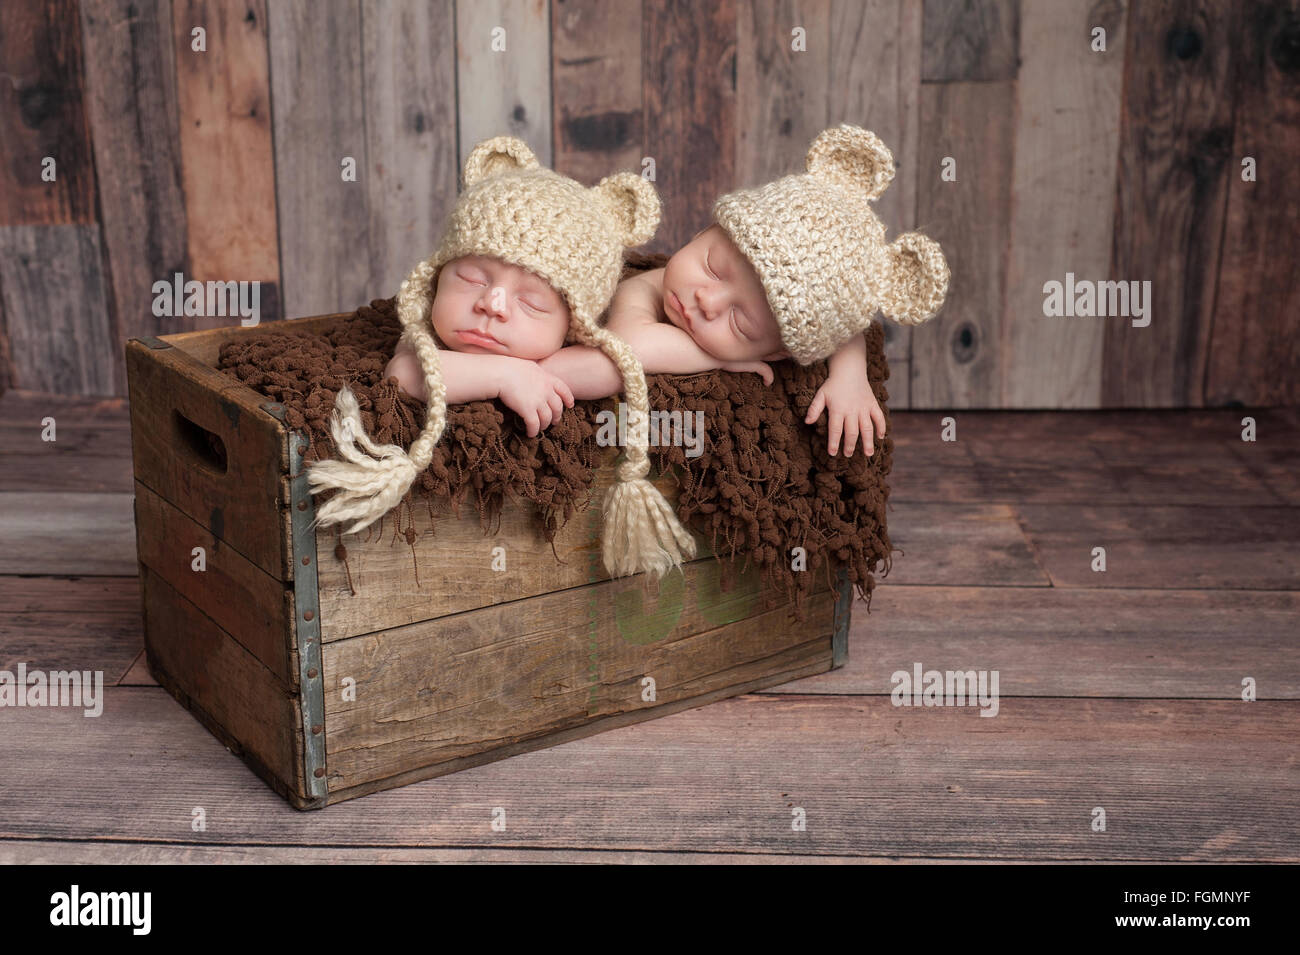 Lits bébé garçon dormir dans une caisse en bois Banque D'Images